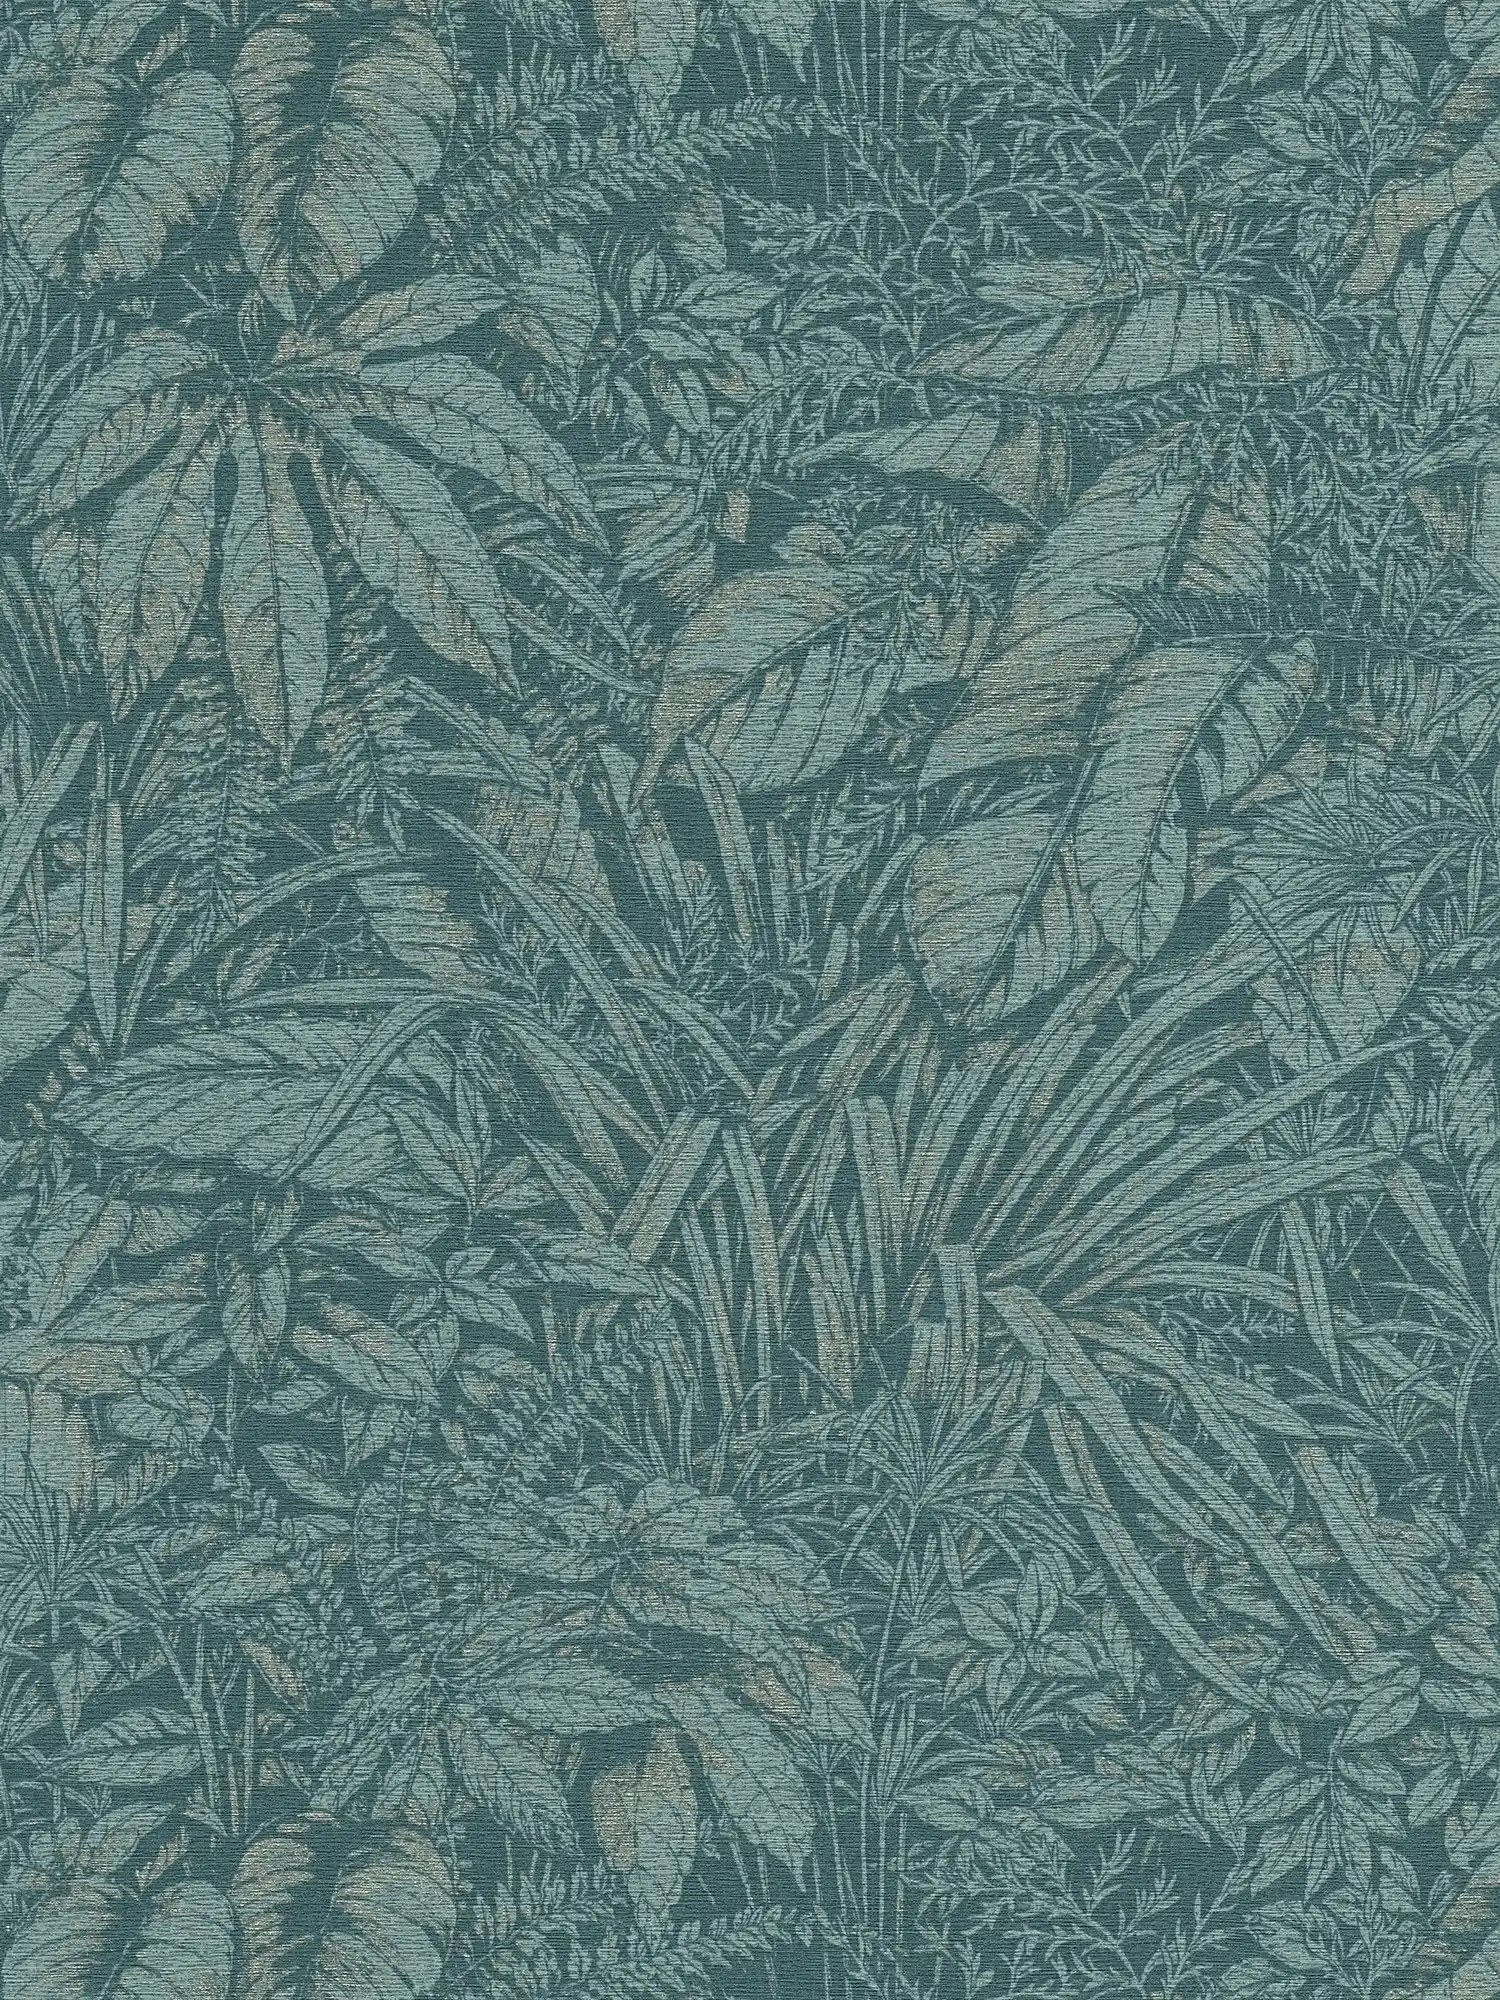 Bloemrijkvliesbehang met palmbladerenpatroon - blauw, petrol, zilver
